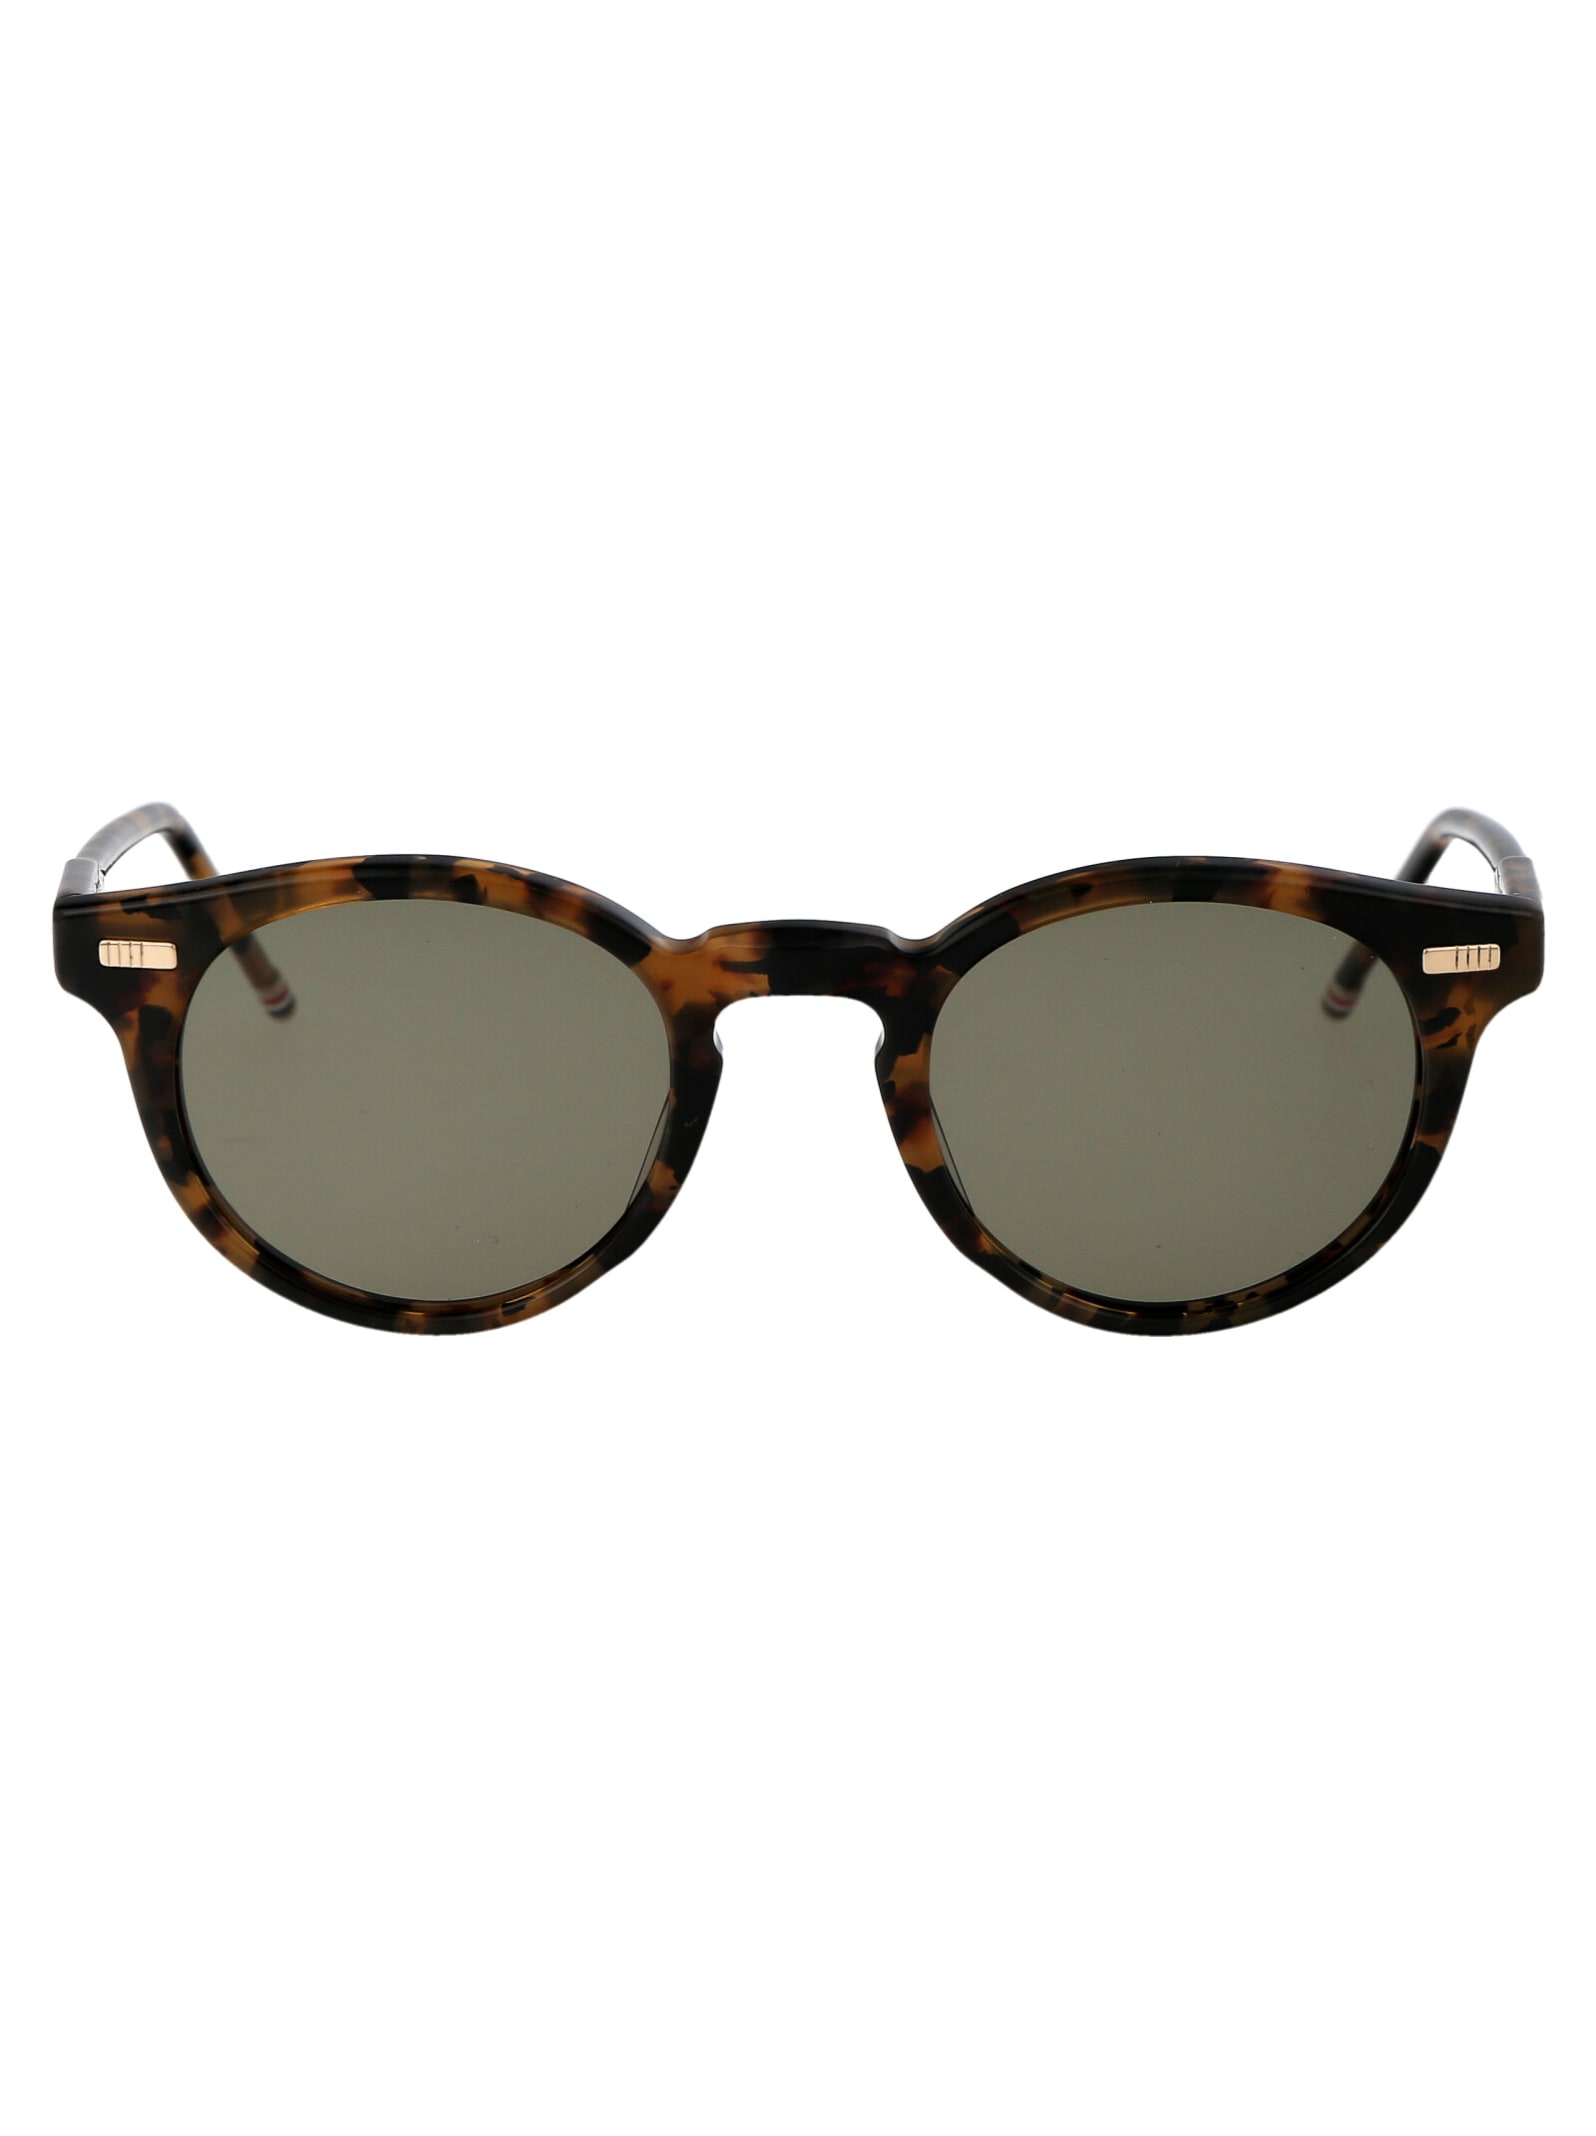 Ues404a-g0002-205-45 Sunglasses